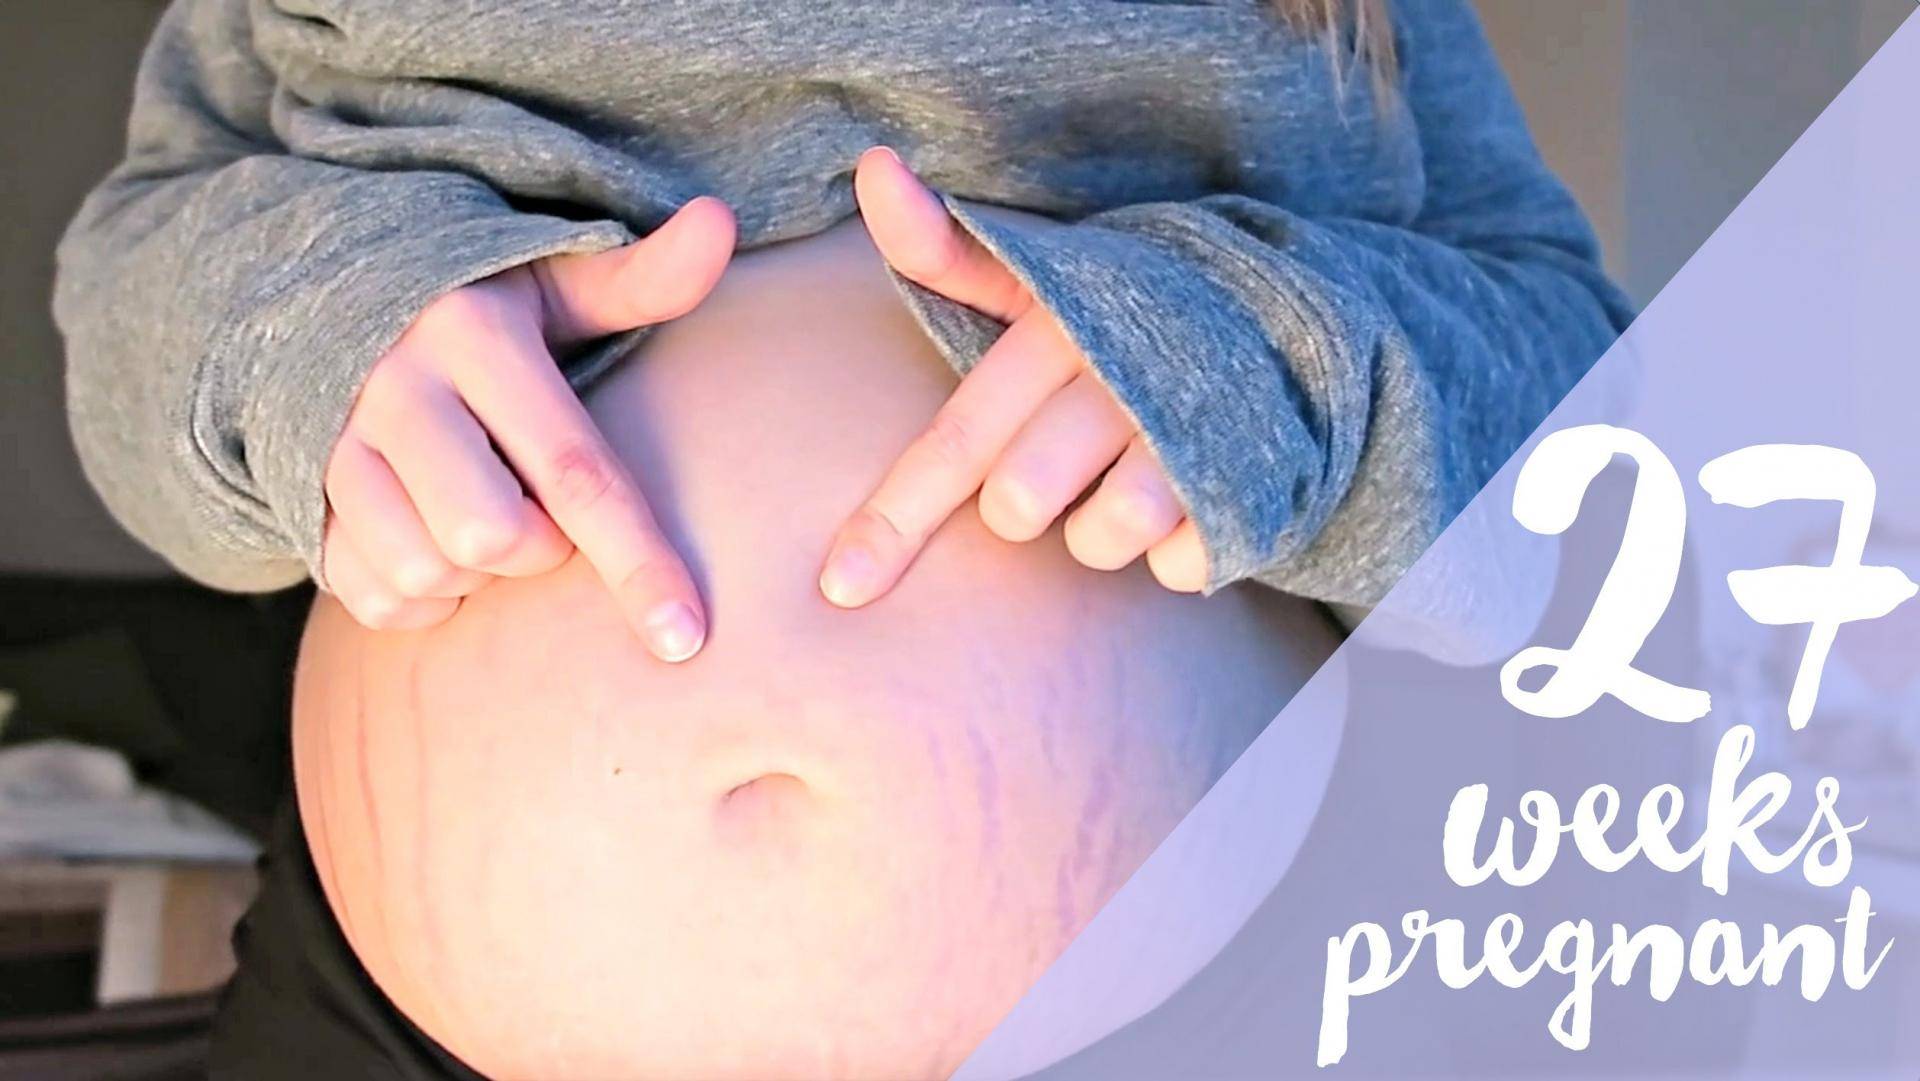 27 неделя беременности - развитие, что происходит, вес,ощущения